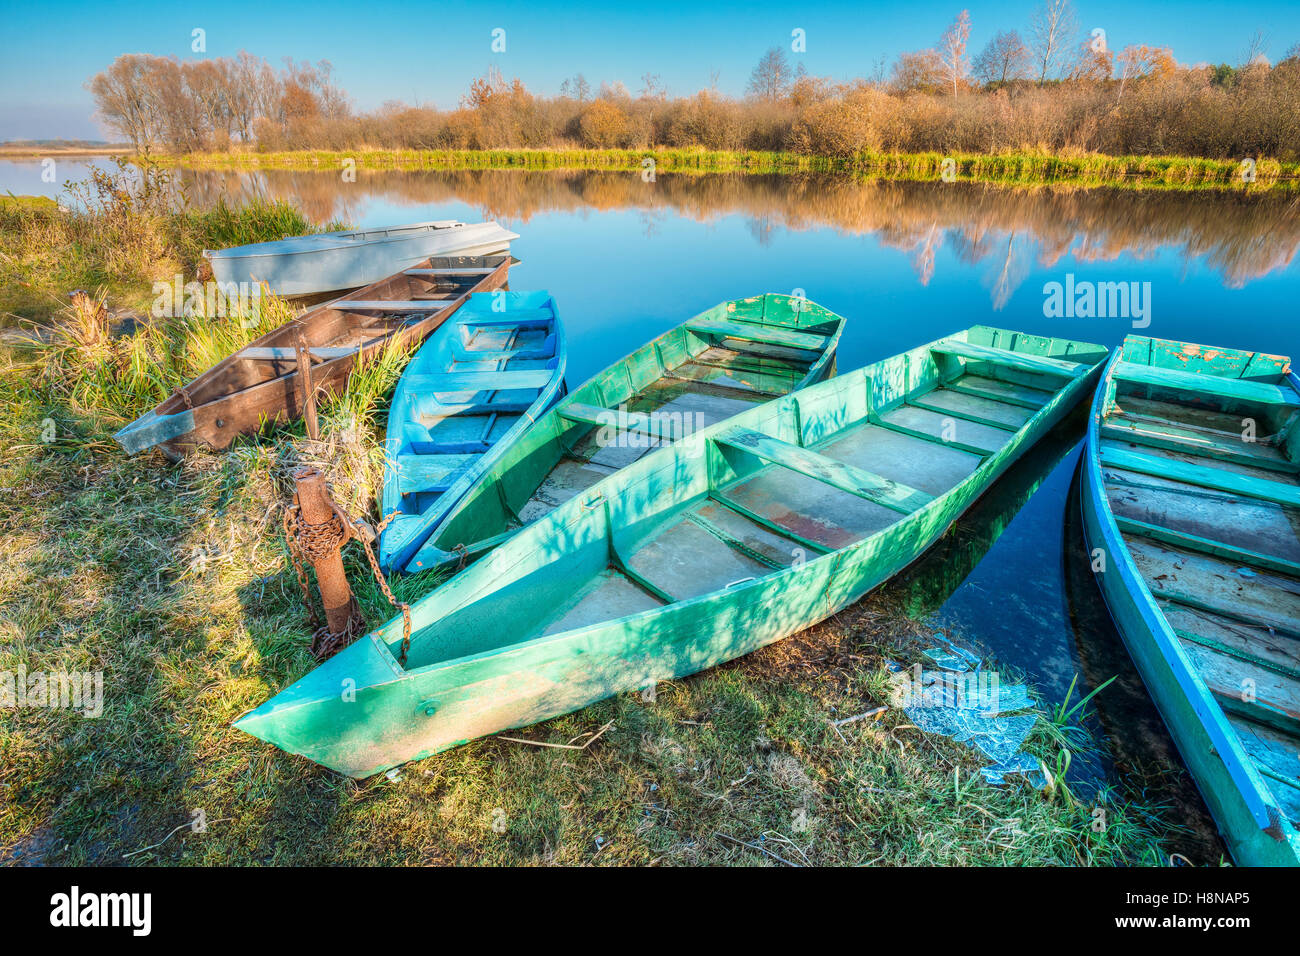 Der Herbst Ufer festgemachten alten hölzernen Angeln Ruderboote Skippets Herbst hinterlassen bewegungslos Flusswasser mit Ic flott Stockfoto